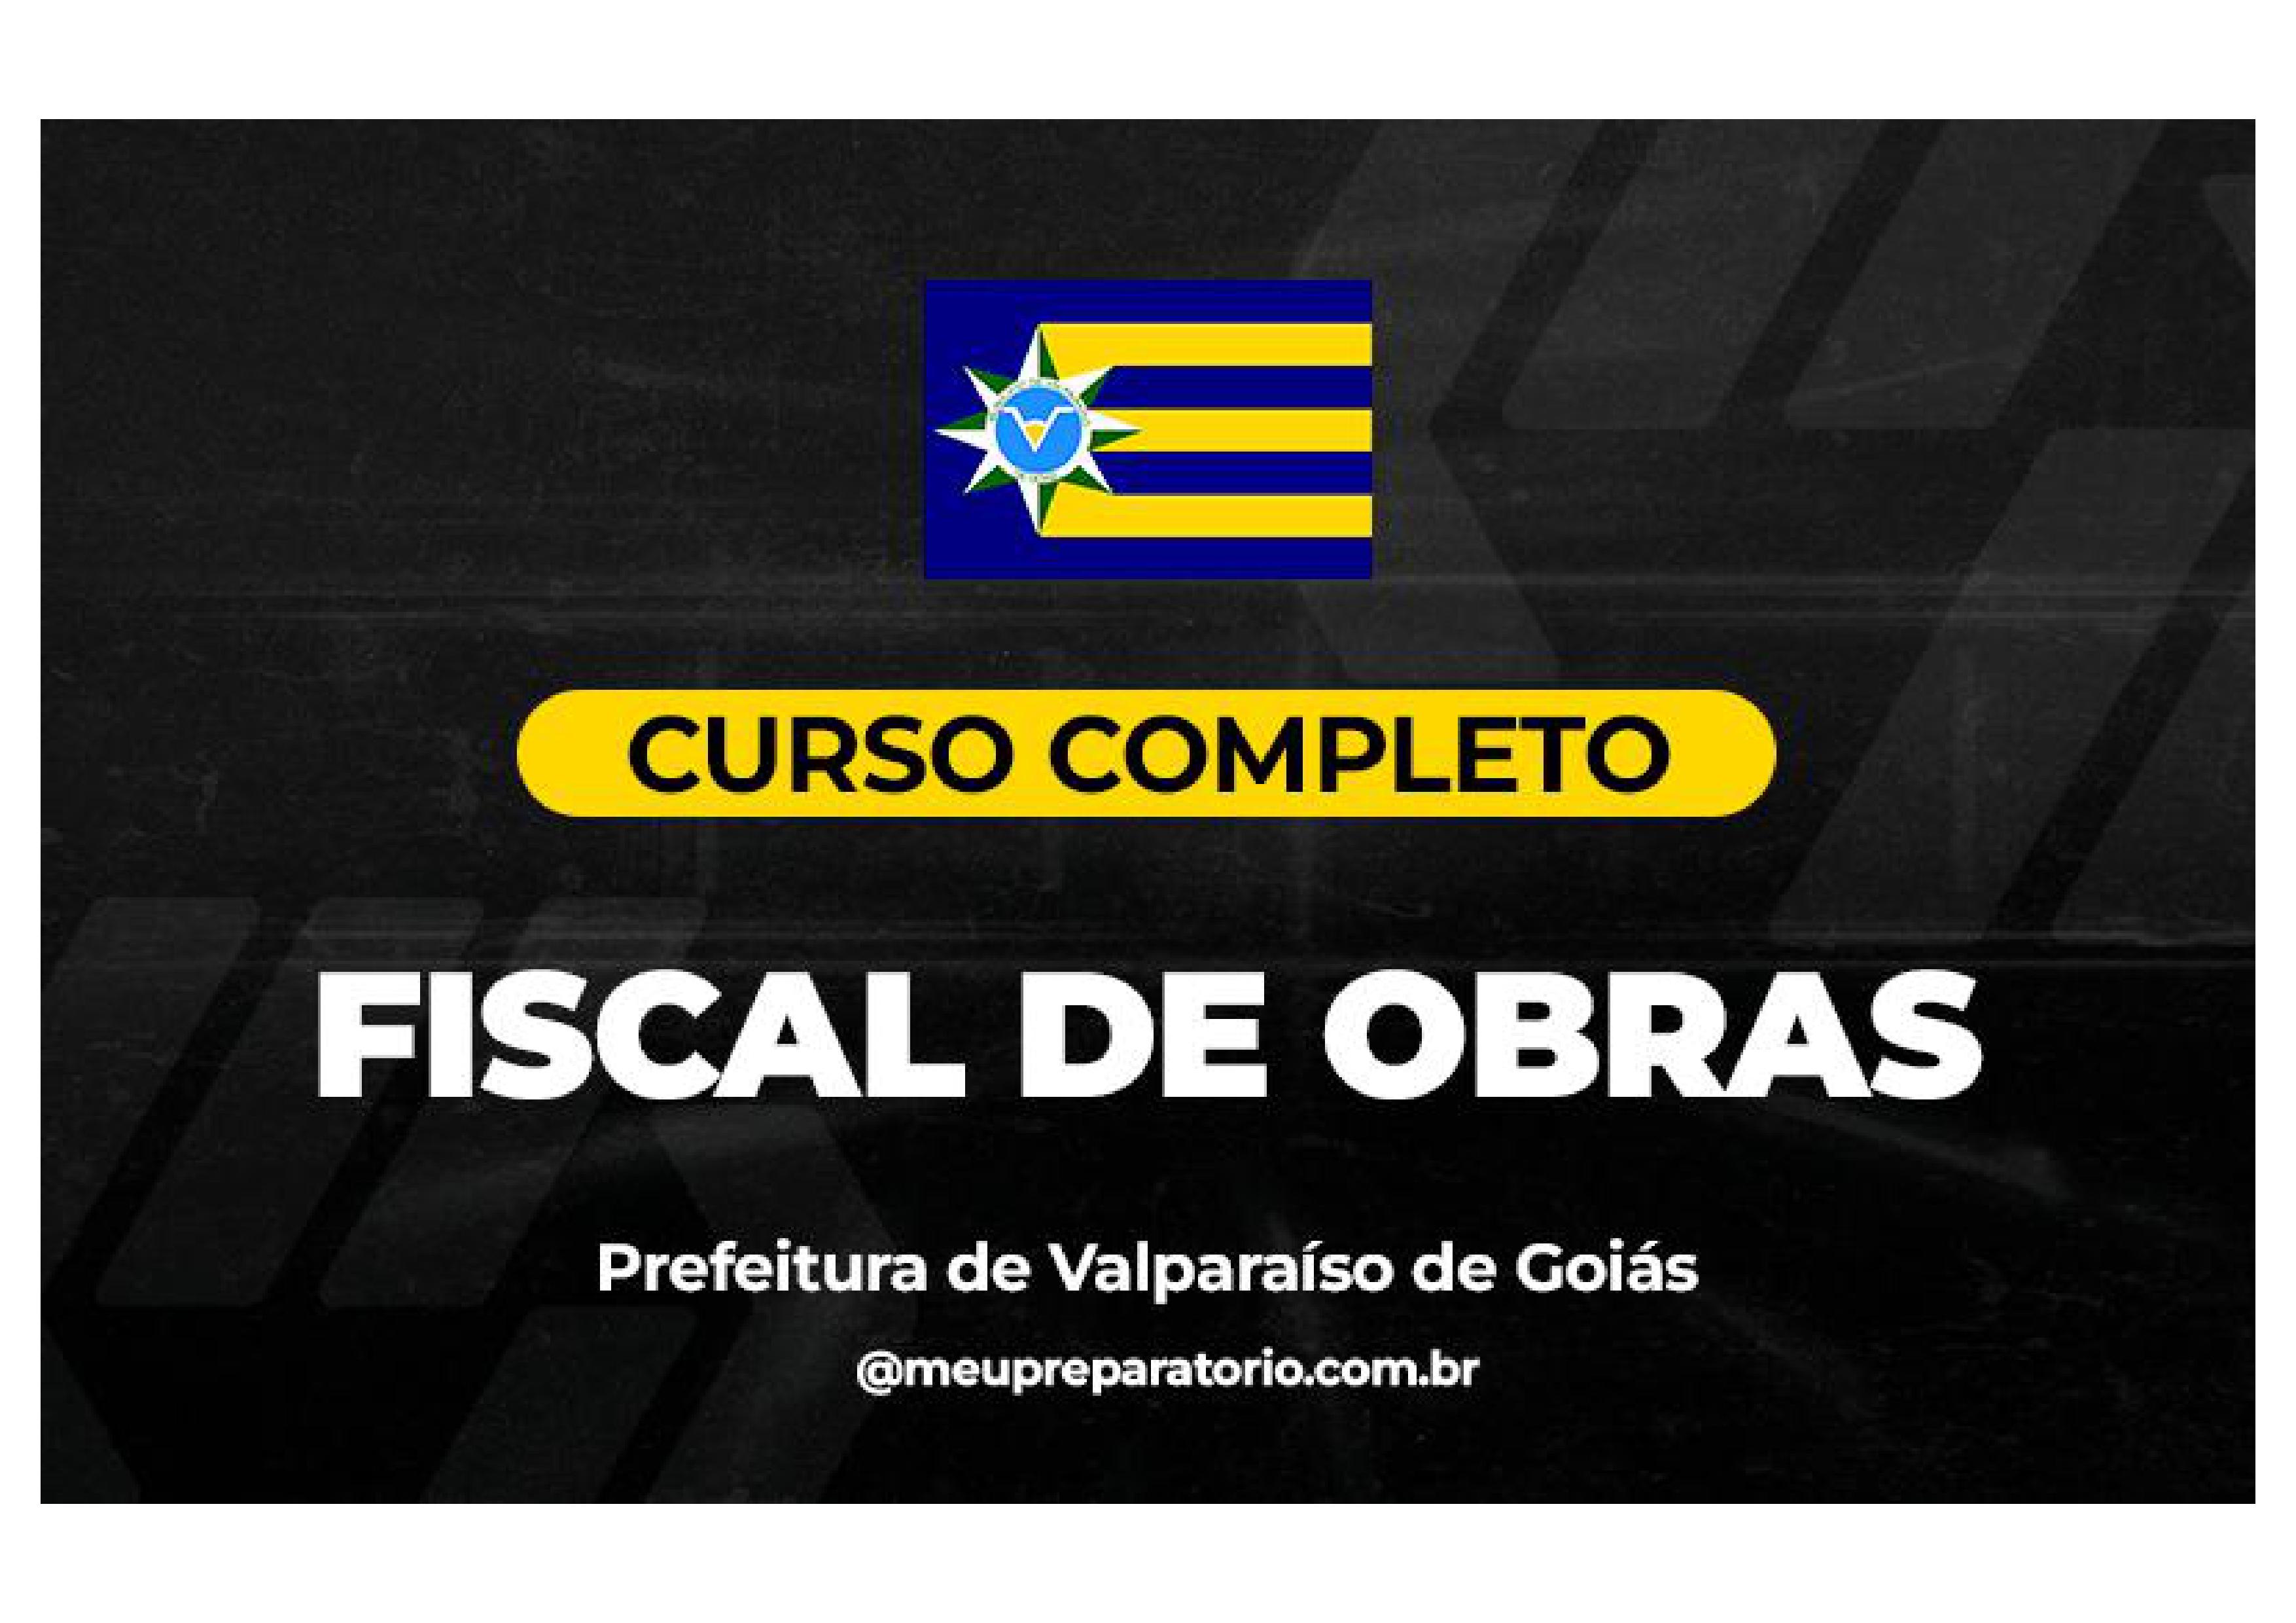 Fiscal de Obras - Valparaíso (GO)